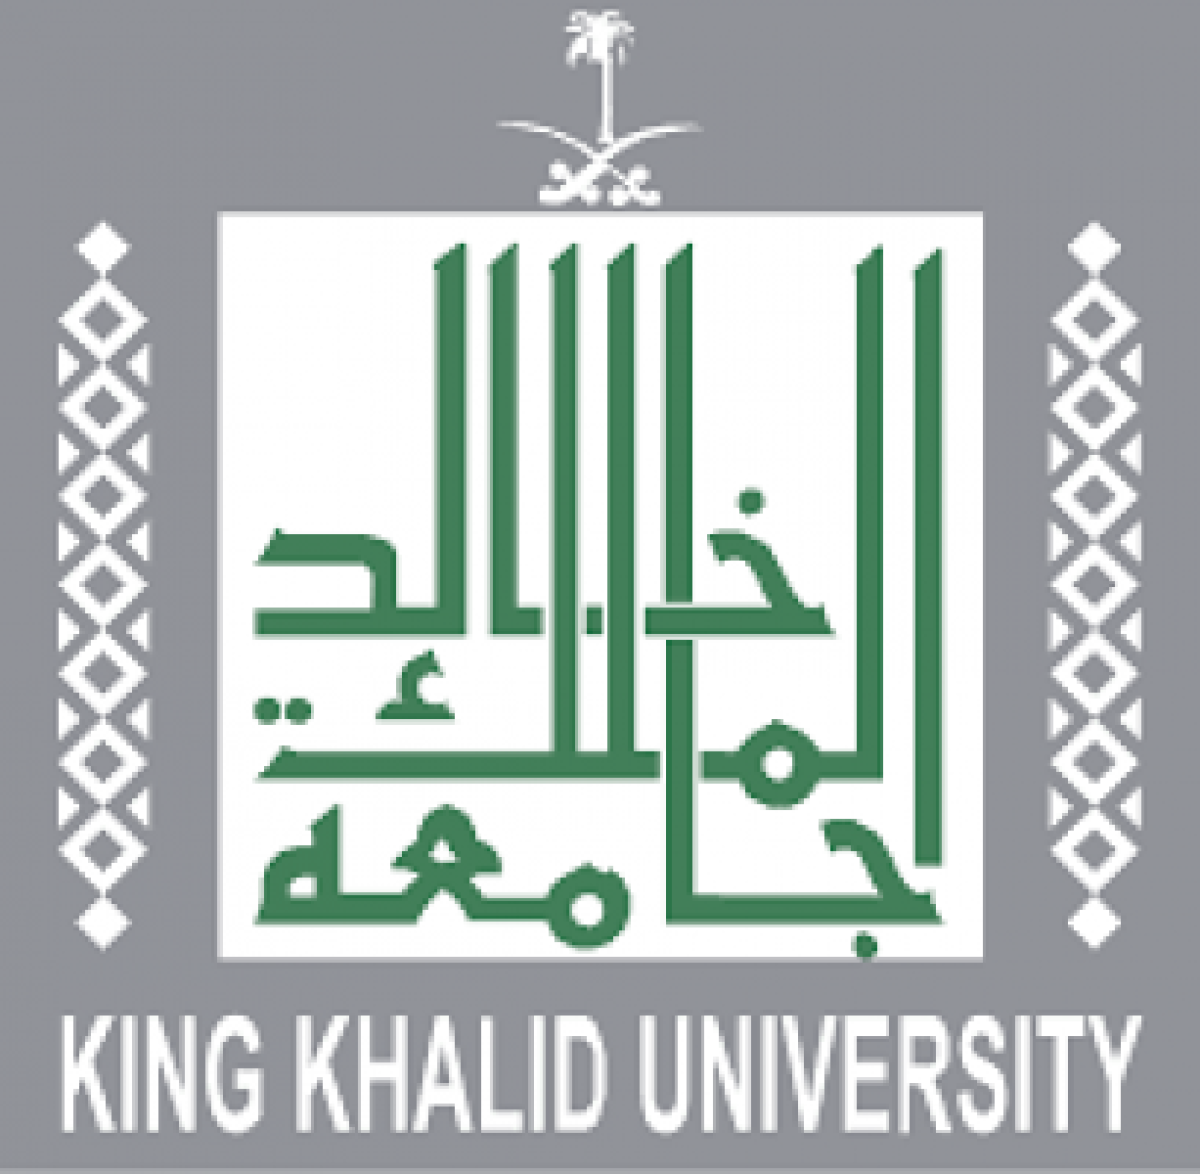 جامعة الملك خالد تتيح للمتقدمين خدمتي "تغيير القبول" و"القبول الفوري"